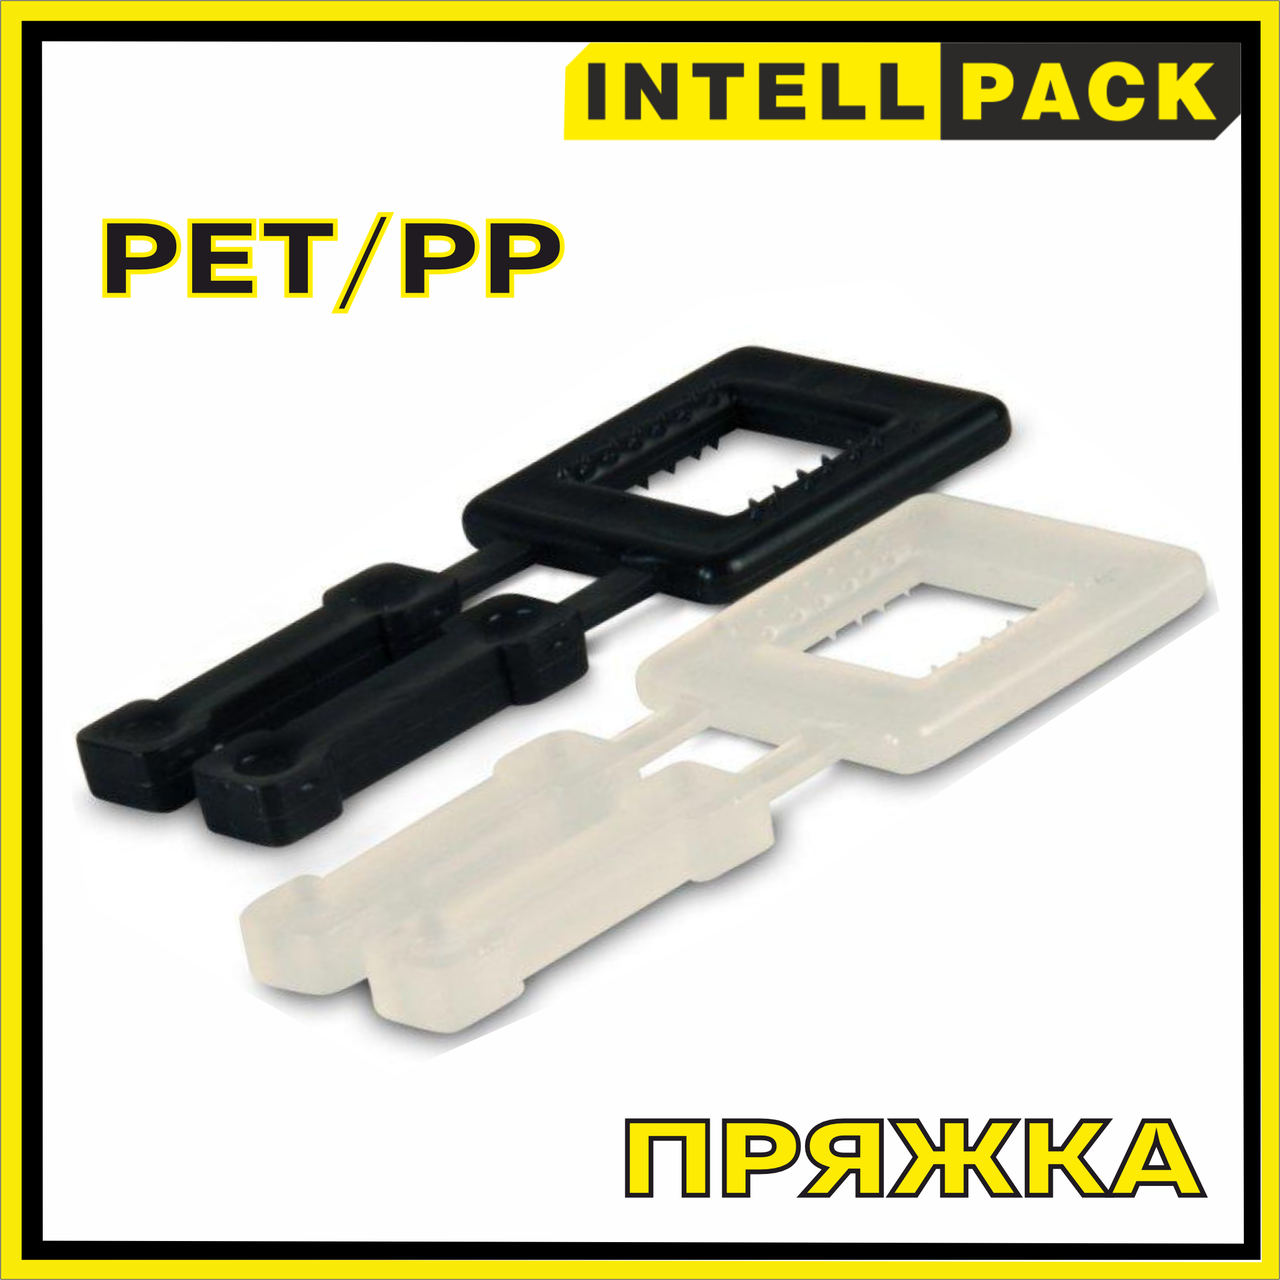 Пряжка пластмассовая для упаковочной ленты PP / PET (полипропиленновая и полиамидная)